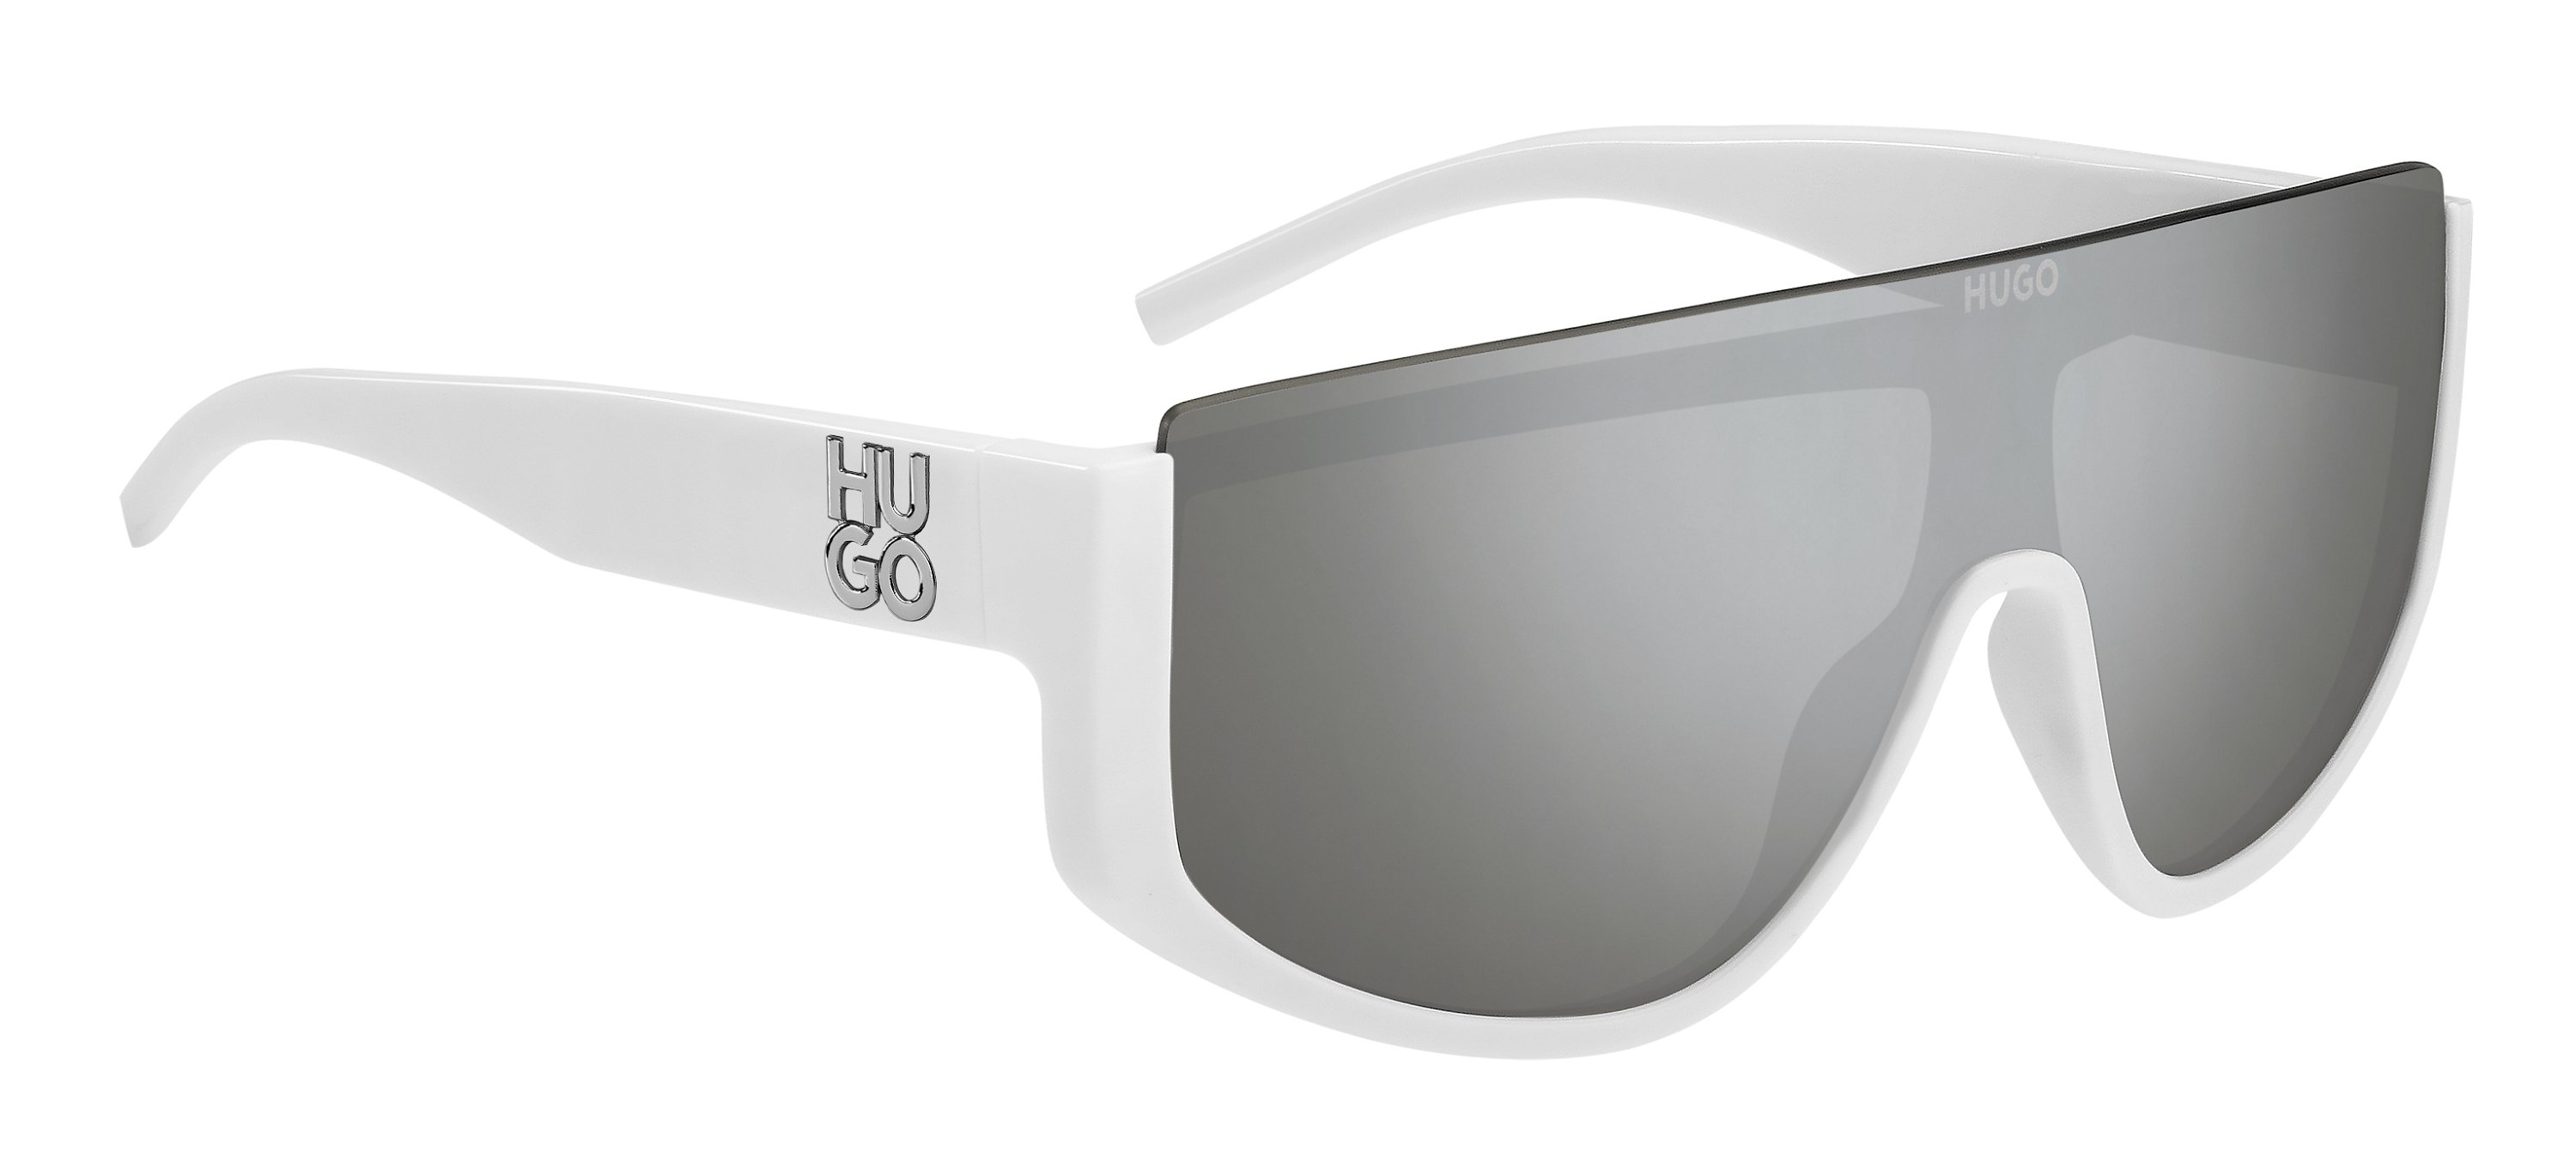 Das Bild zeigt die Sonnenbrille HG1283/S VK6 von der Marke Hugo in weiß.